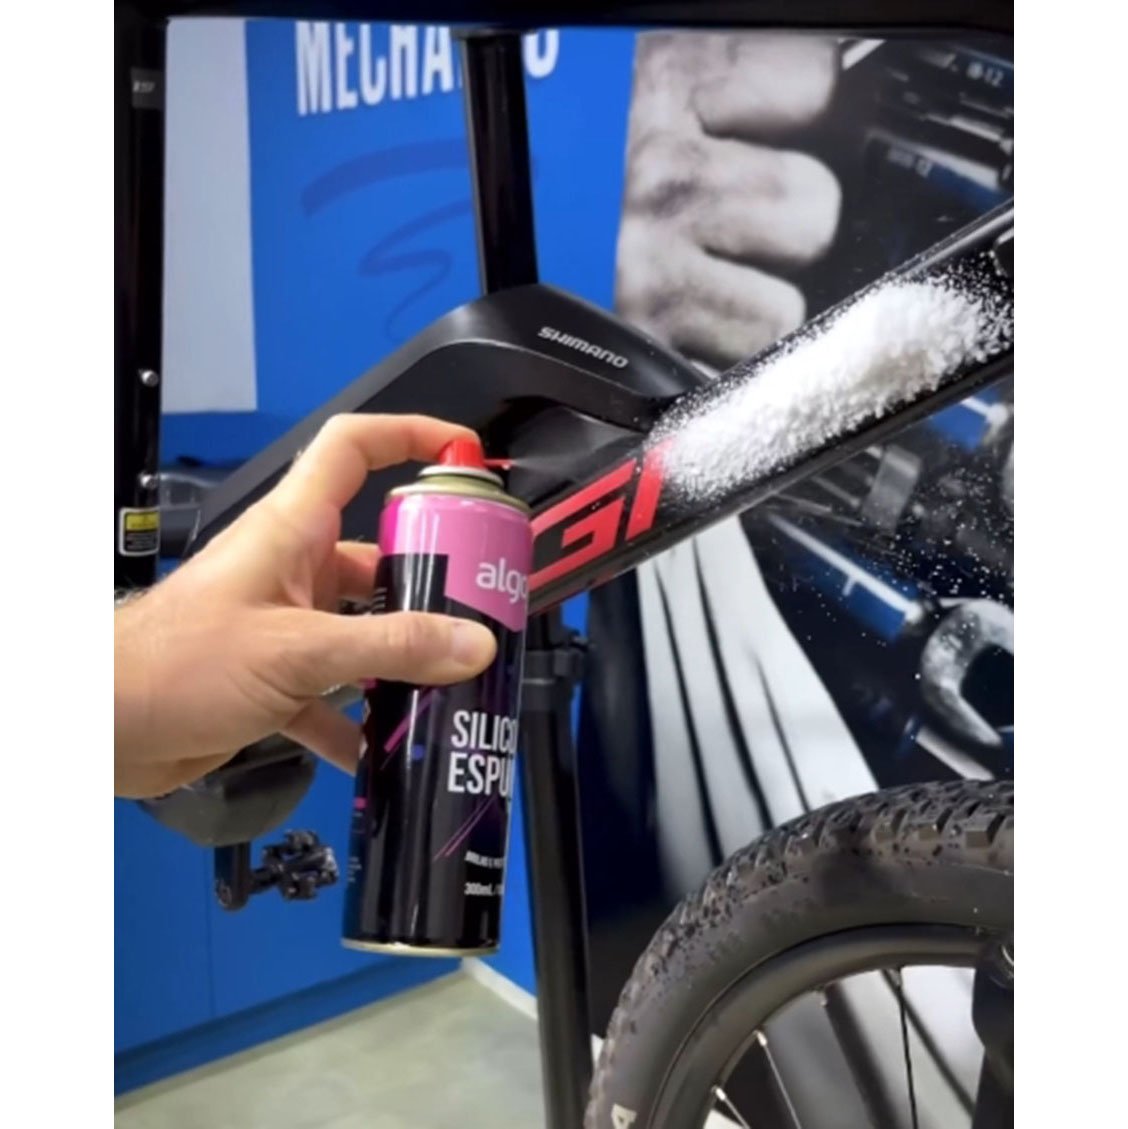 Silicone Spray Espuma Ptfe Algoo Óleo Lubrificante Bike Moto - 2